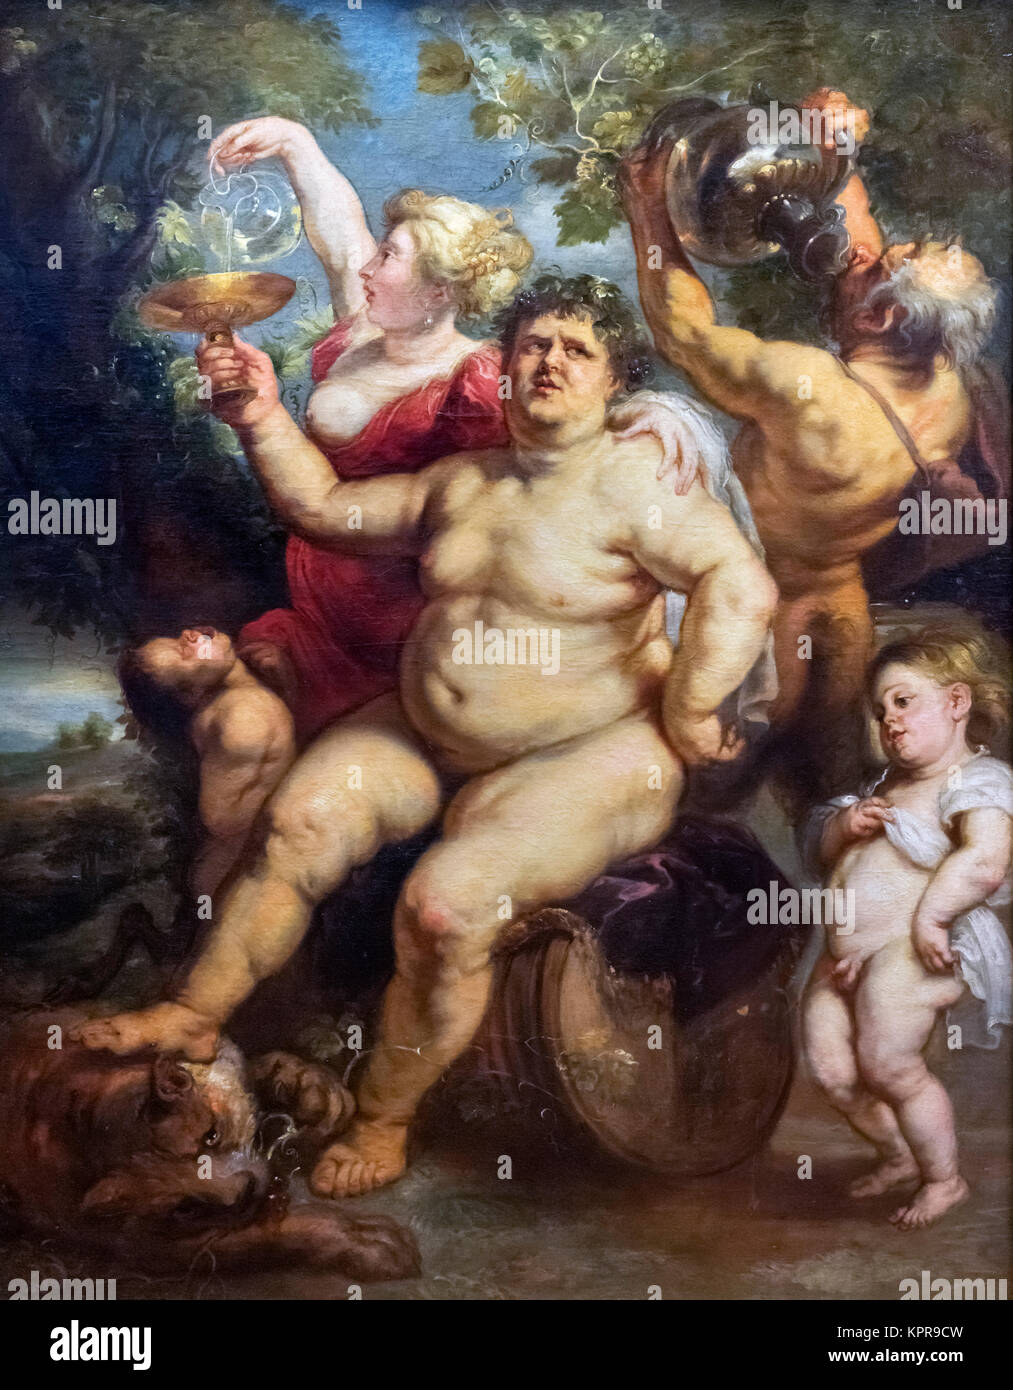 Bacchanales de Peter Paul Rubens (1577-1640), huile sur toile, c.1635-40. La peinture représente Bacchus (ou Dionysos), le dieu du vin. Banque D'Images